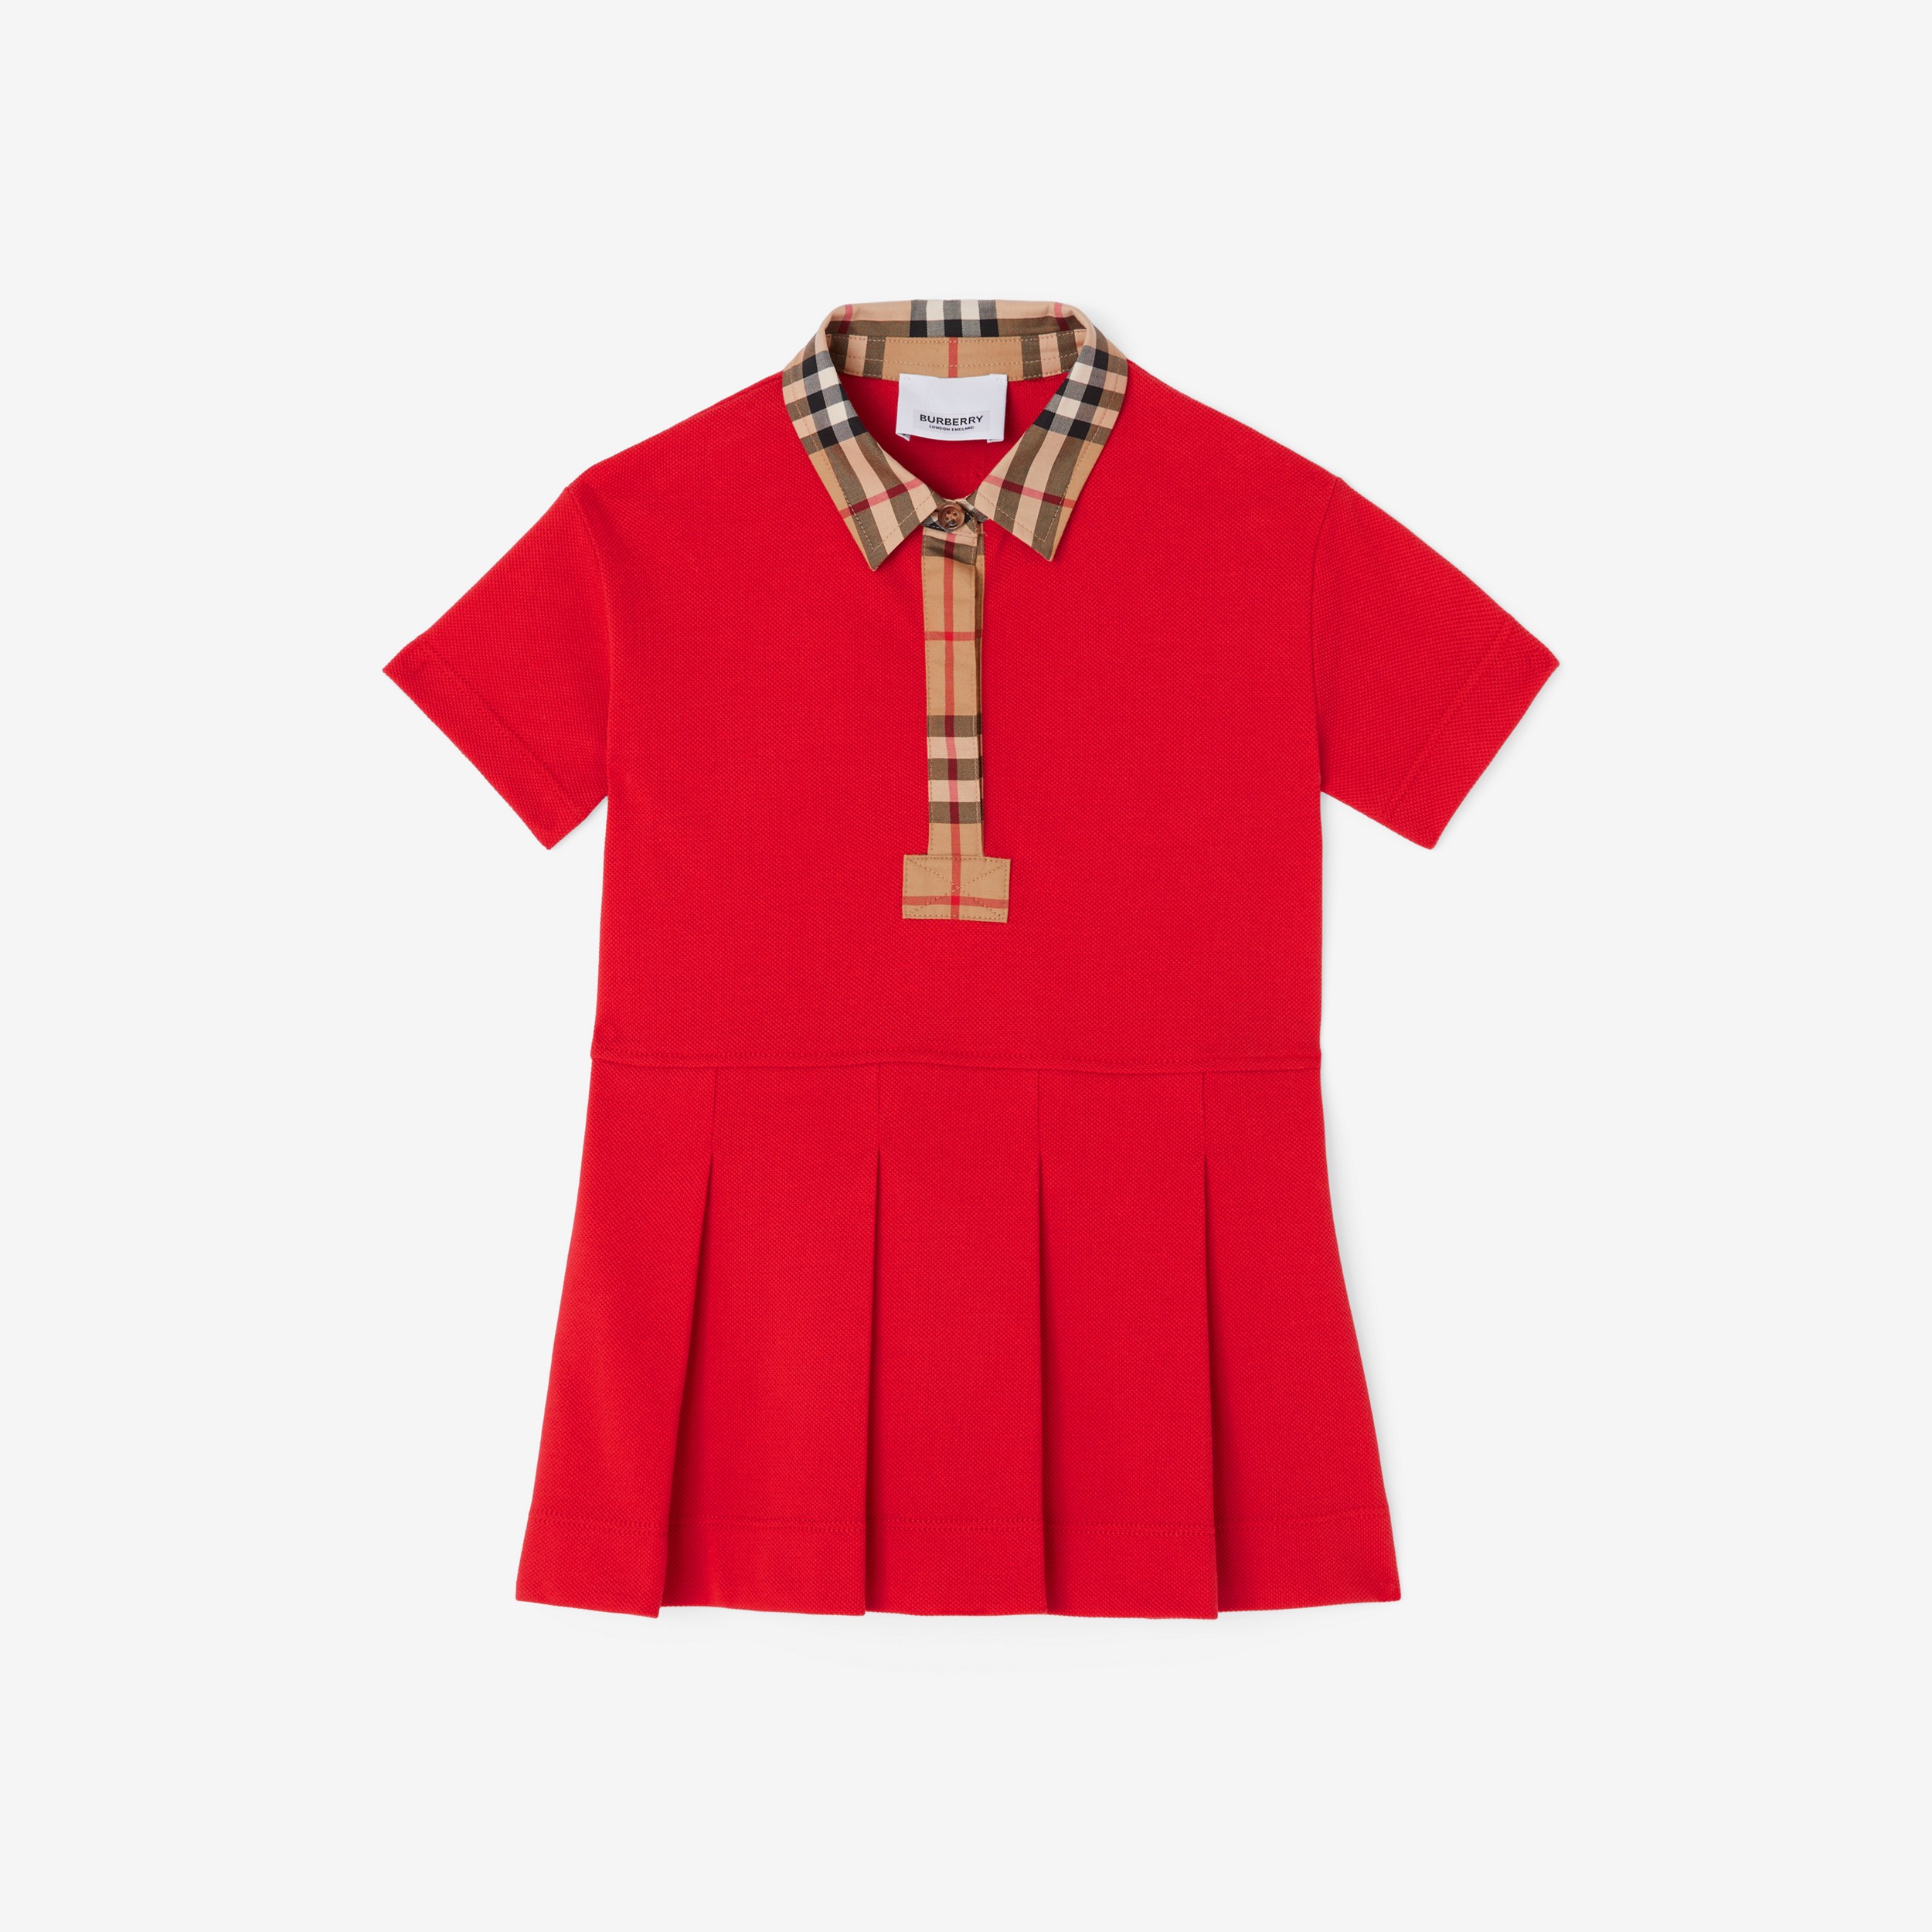 Vestitino stile polo in cotone piqué con finiture Vintage check (Rosso Intenso) - Bambini | Sito ufficiale Burberry® - 1